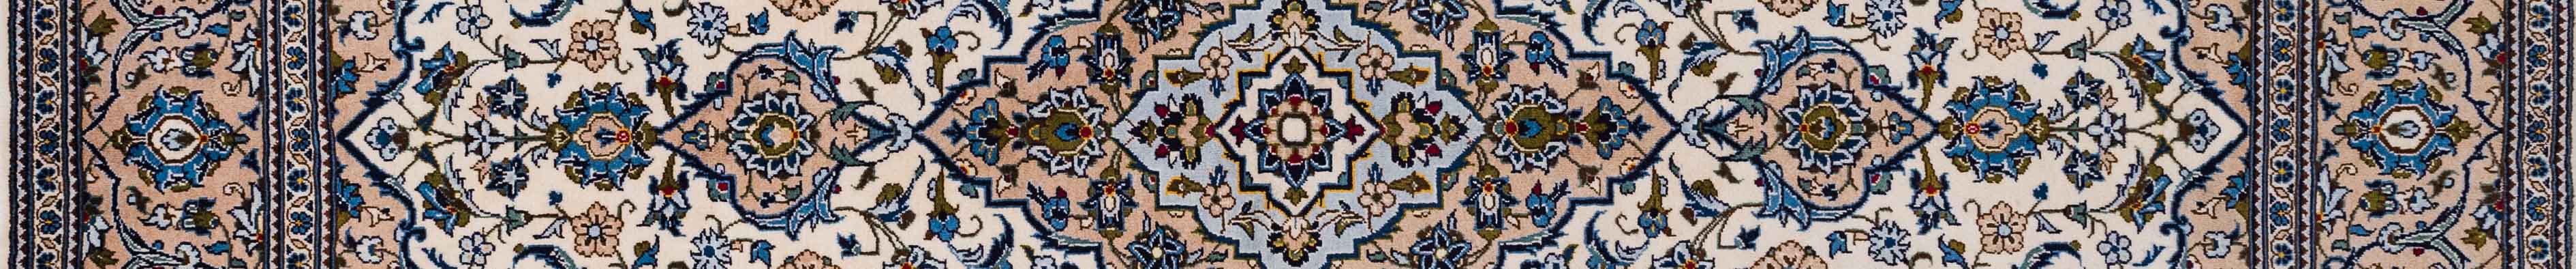 Kashan Persian Carpet Rug N1Carpet Canada Montreal Tapis Persan 1950